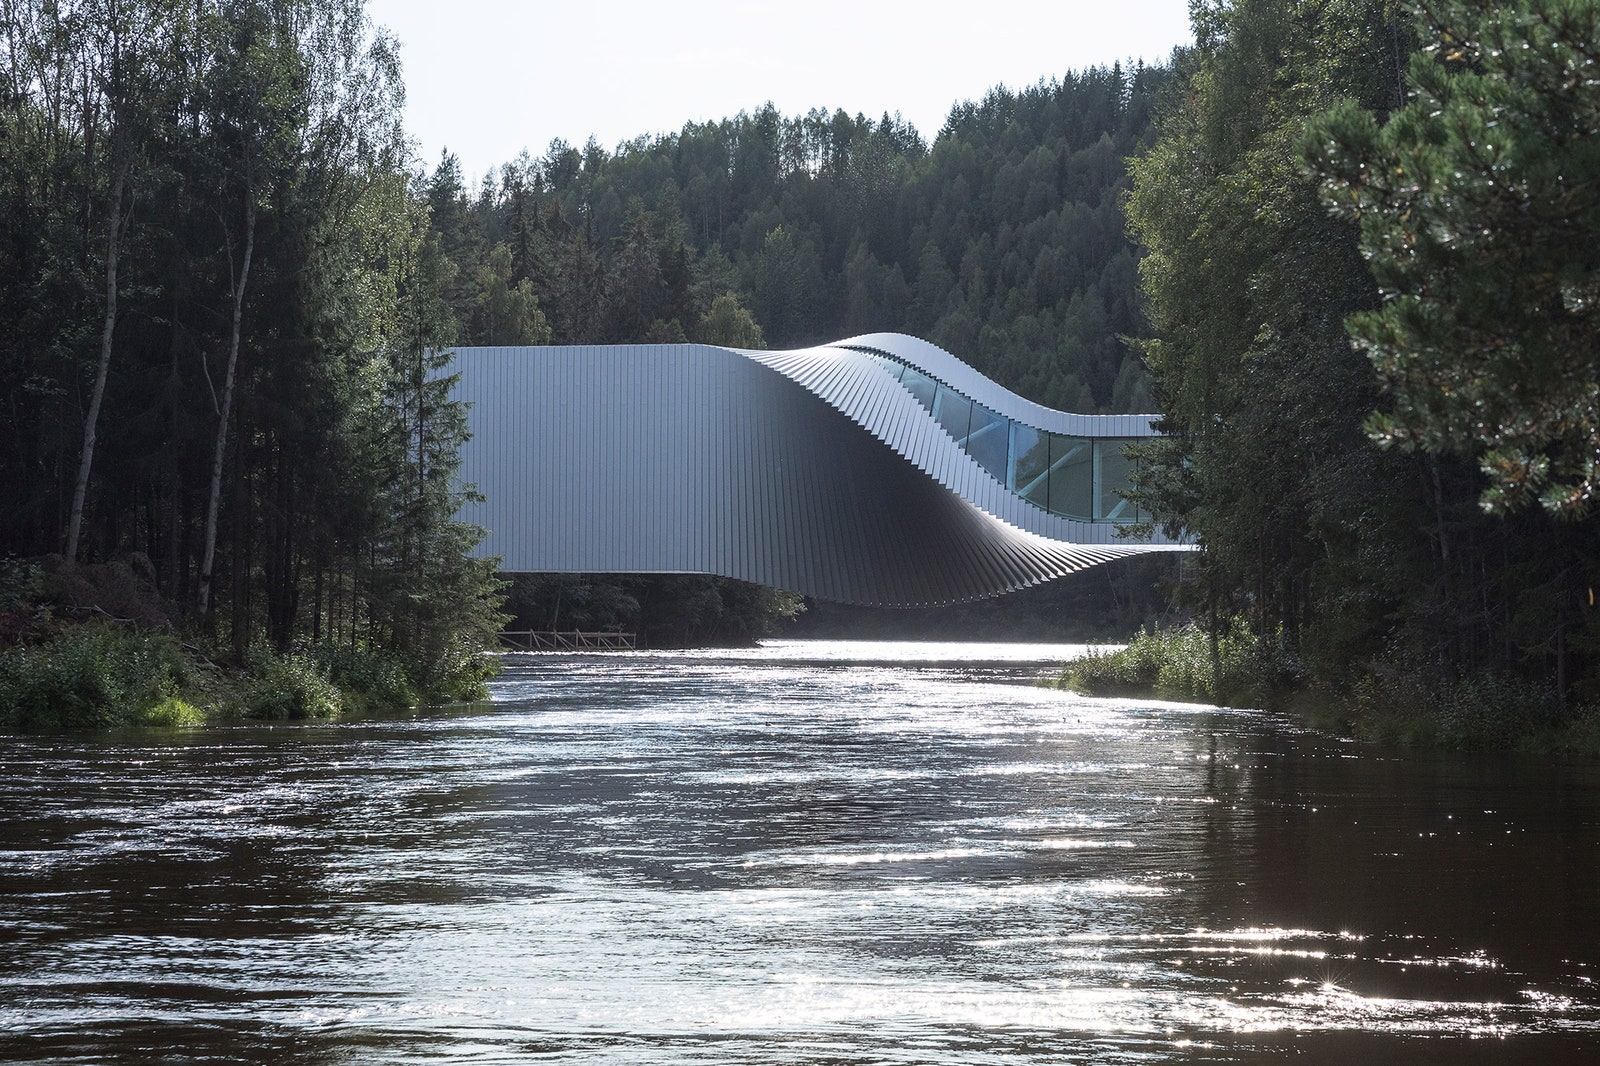 Первый проект BIG в Норвегии музейный павильонмост в парке Кистефос